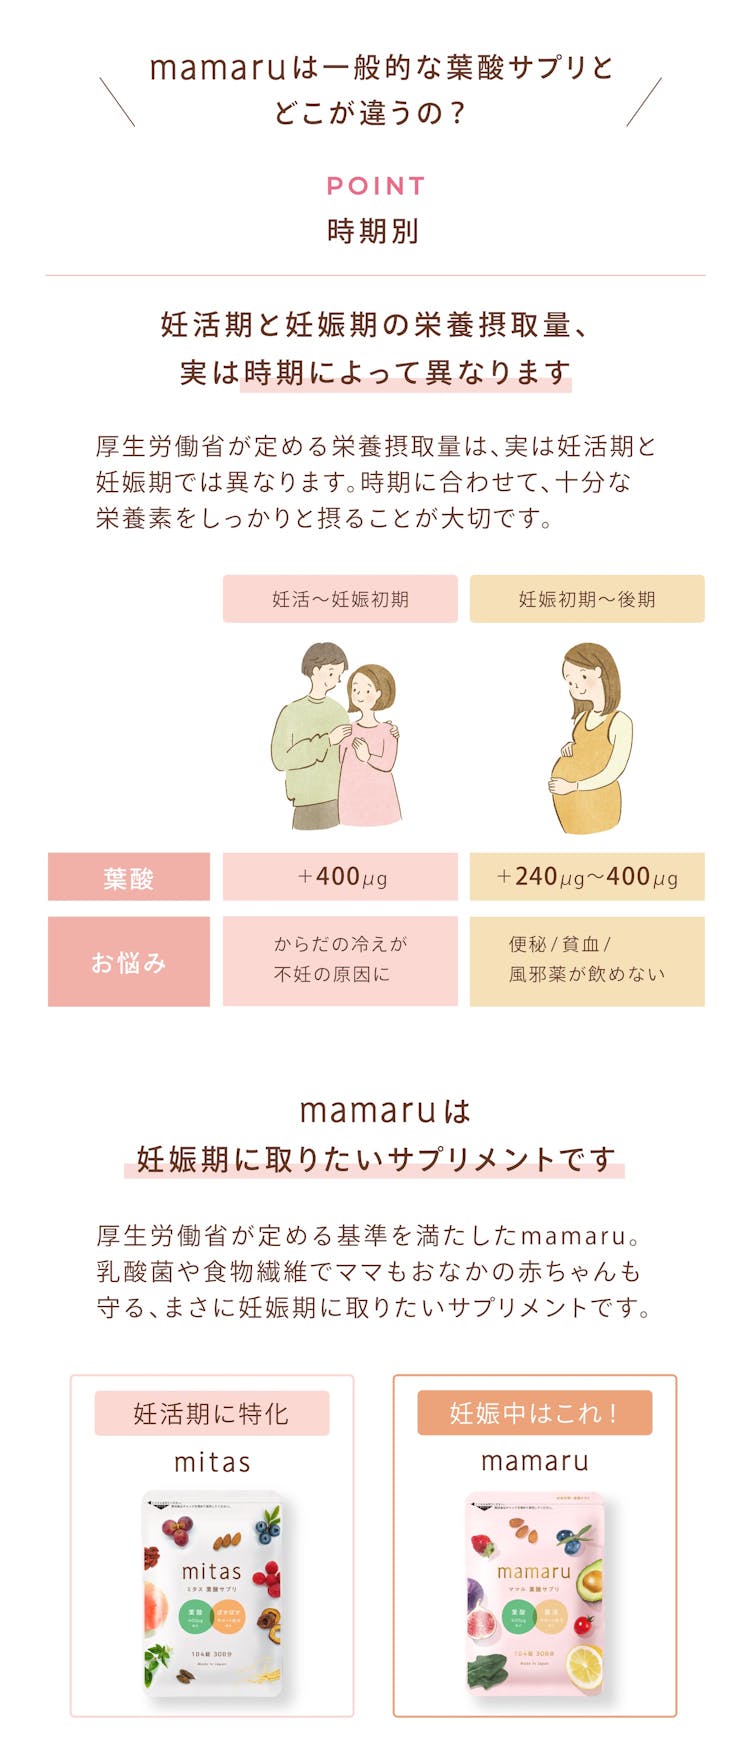 mamaruは妊娠期に適した葉酸サプリ